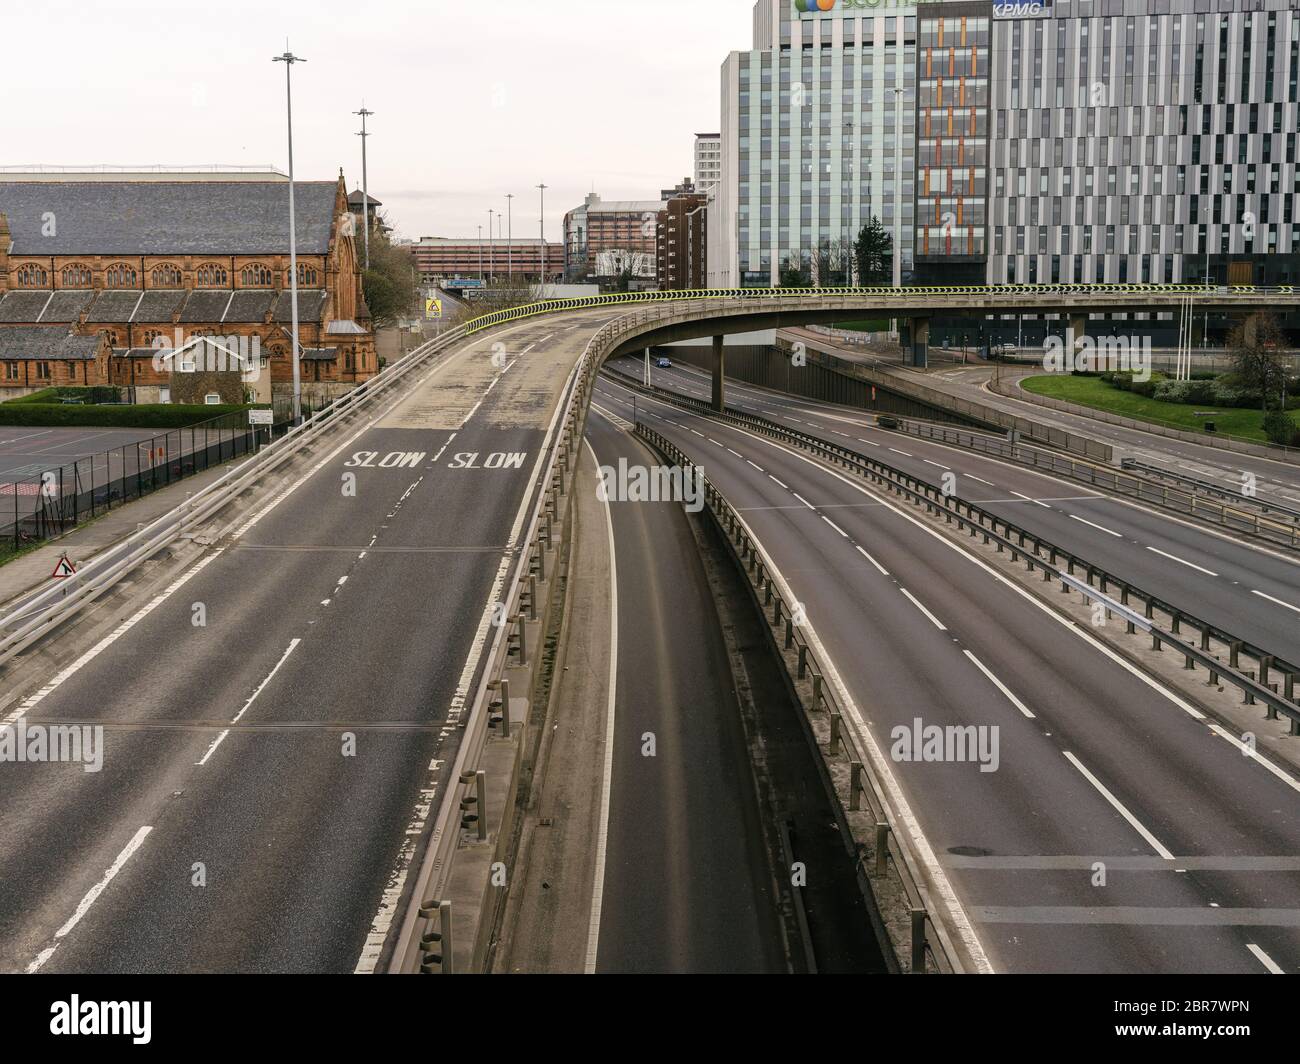 L'autostrada M8, solitamente trafficata, e il Kingston Bridge, che attraversa la città di Glasgow e il fiume Clyde, illustrando che il blocco del governo, le linee guida per le distanze sociali e gli avvisi "a casa" vengono rispettati durante la pandemia di Coronavirus. Foto Stock